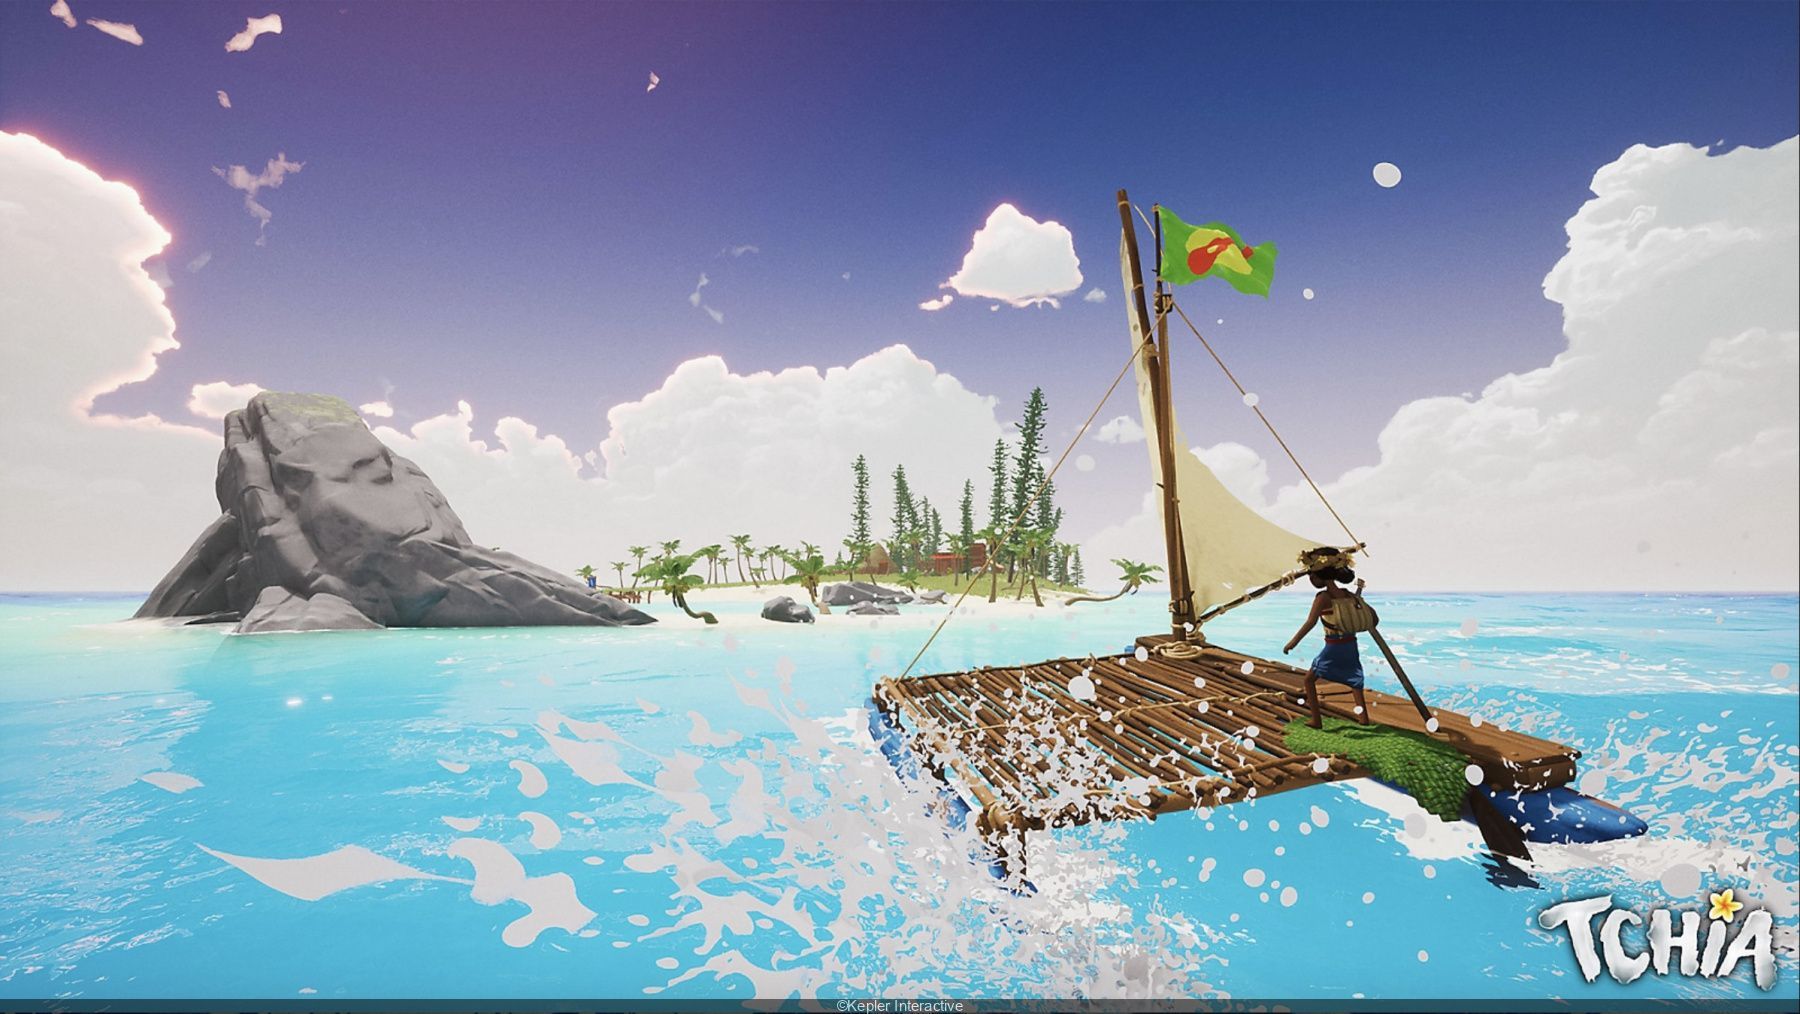 Tchia : le jeu inspiré de la Nouvelle-Calédonie s'offre une bande-annonce et une date de sortie